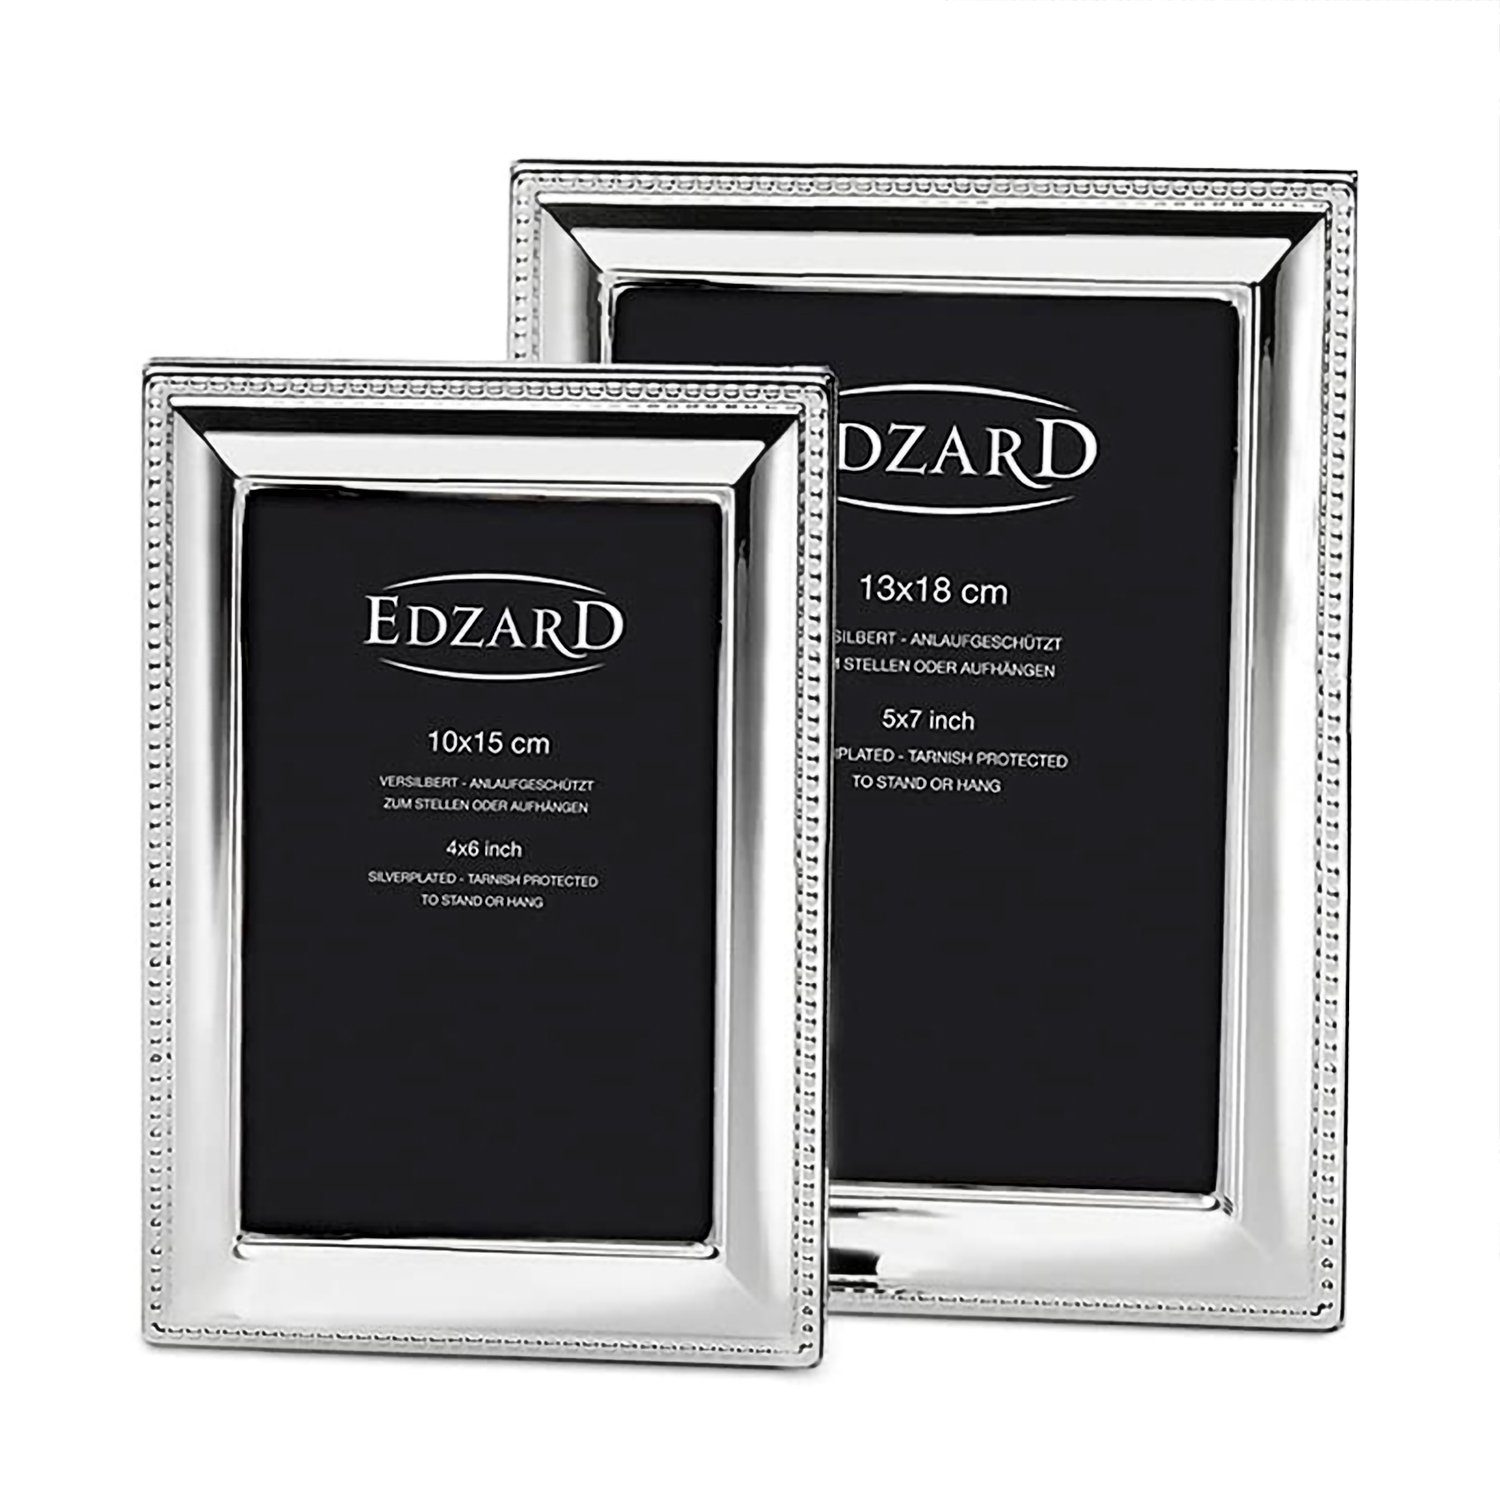 10x15 cm Versilbert und Bilderrahmen anlaufgeschützt, für EDZARD Bilder Perla,